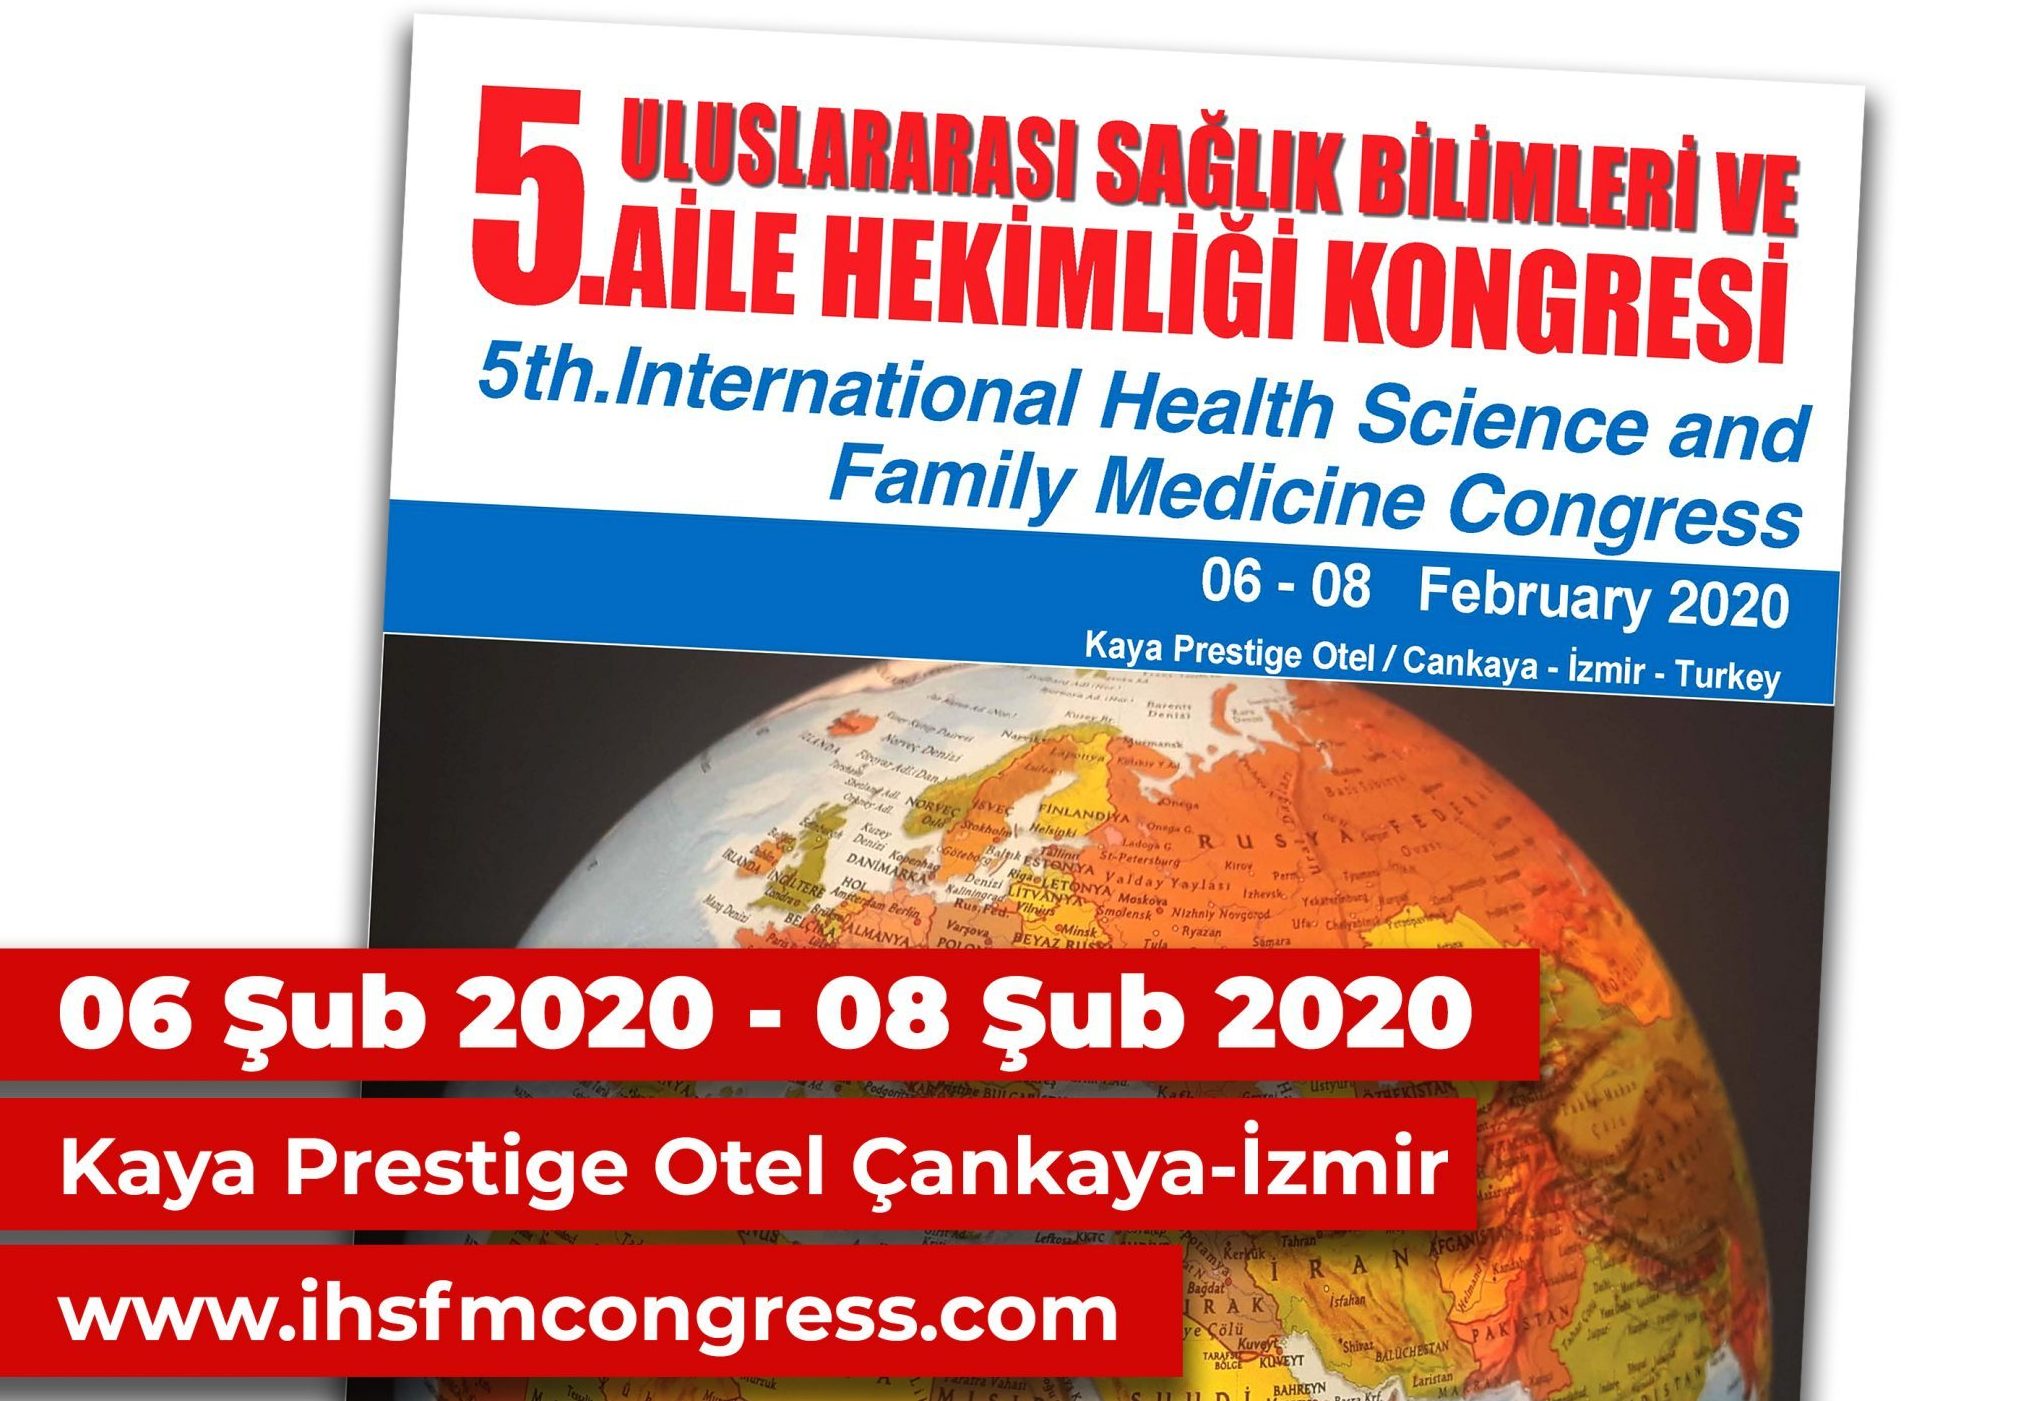 5. Uluslarası Sağlık Bilimleri ve Aile Hekimliği Kongresi 2020